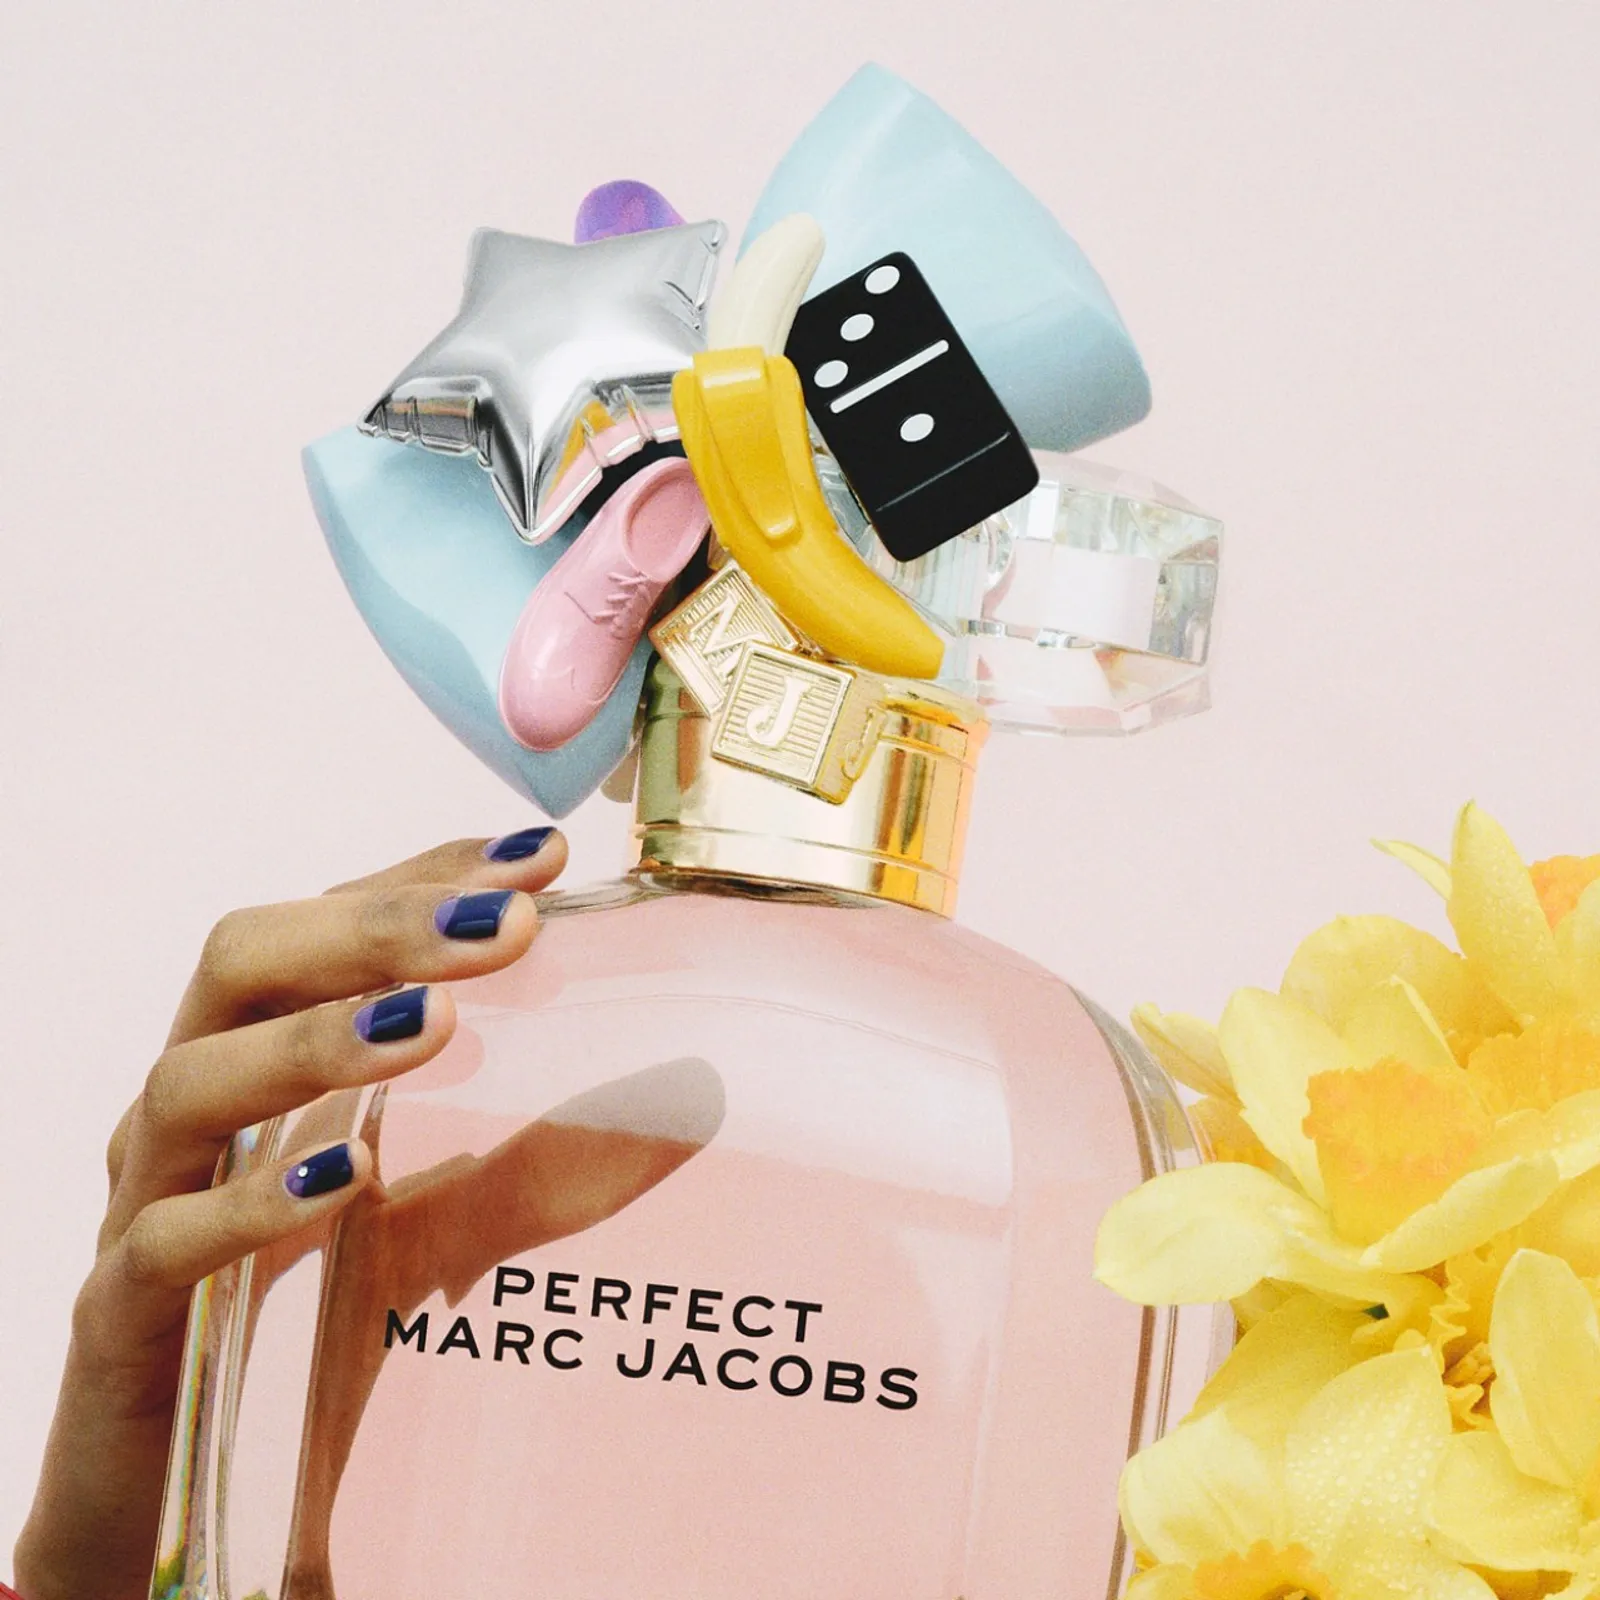 Perfect, Parfum Terbaru dari Marc Jacobs yang Modern